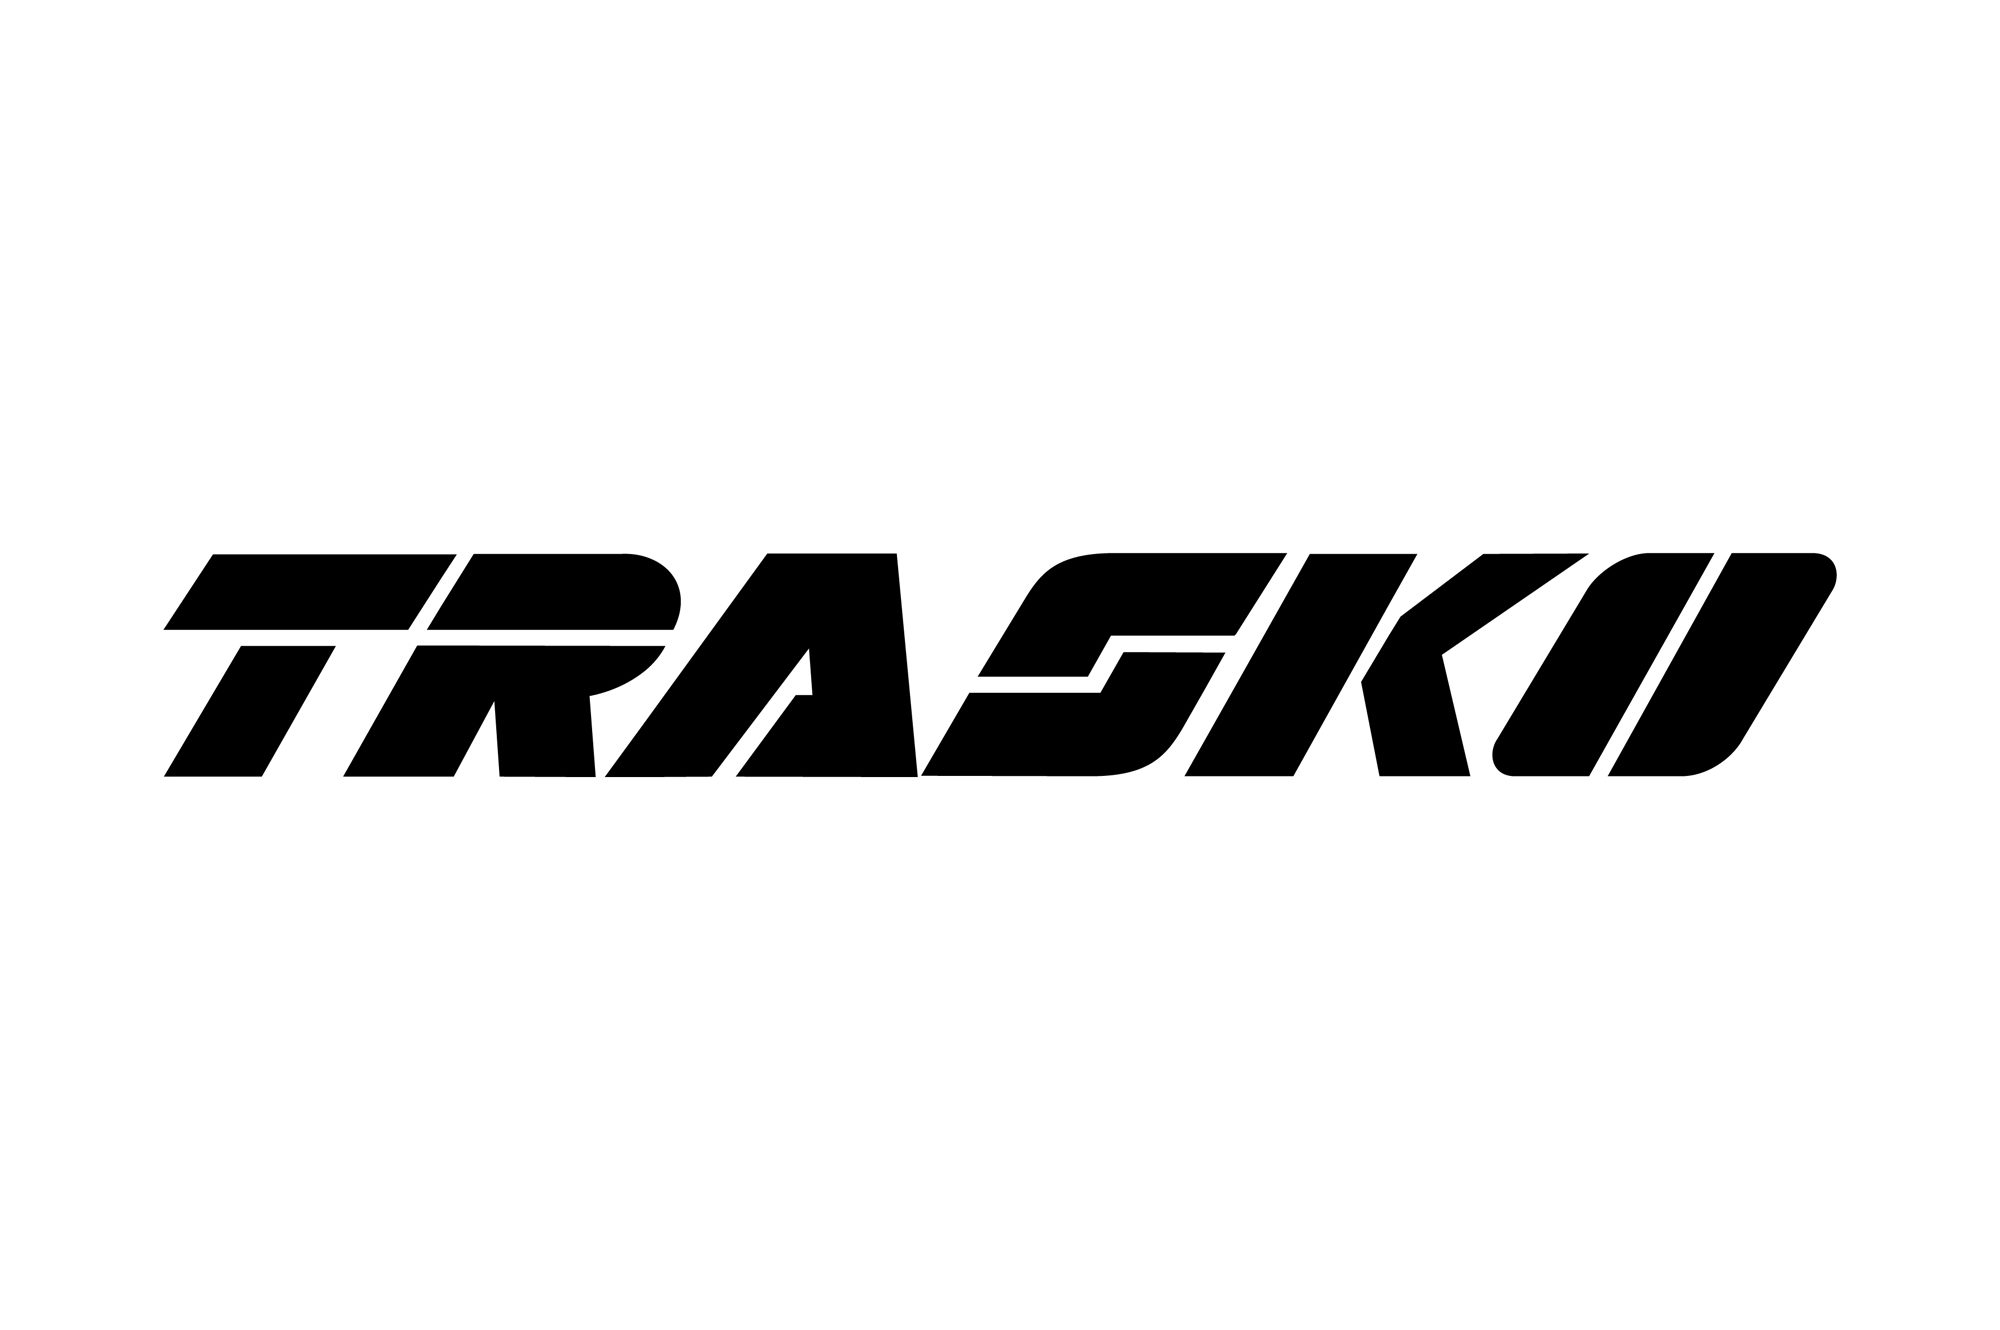 TRASKO - logo PLANSZA 30x30cm EDYCJA